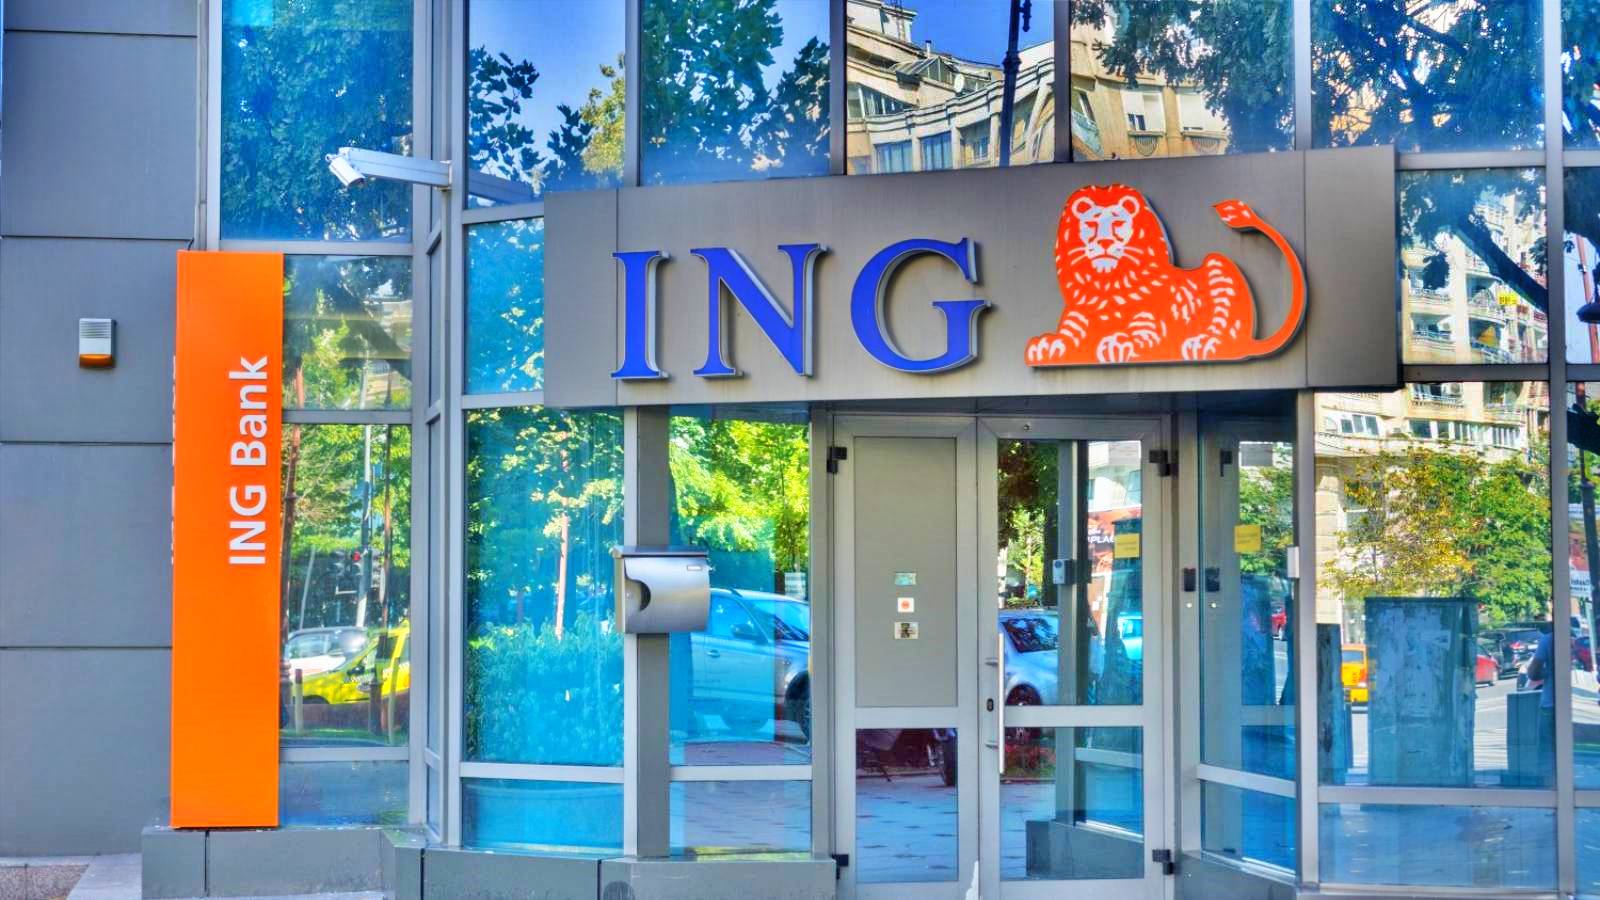 ING Bank fear